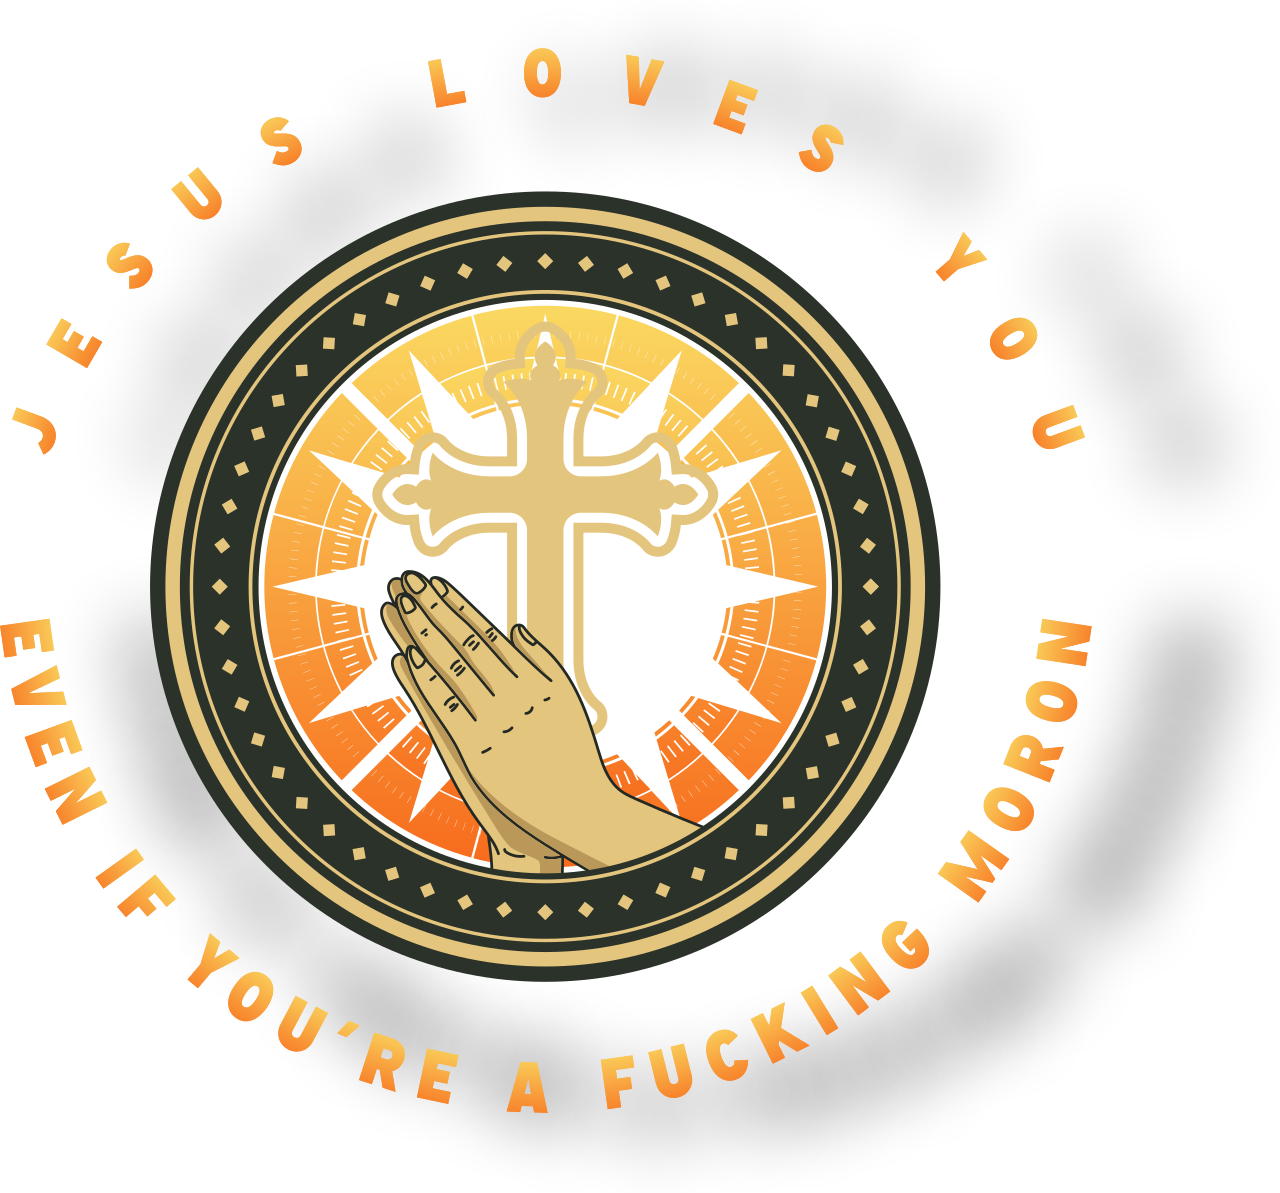 JESUS LOVES YOU's logo